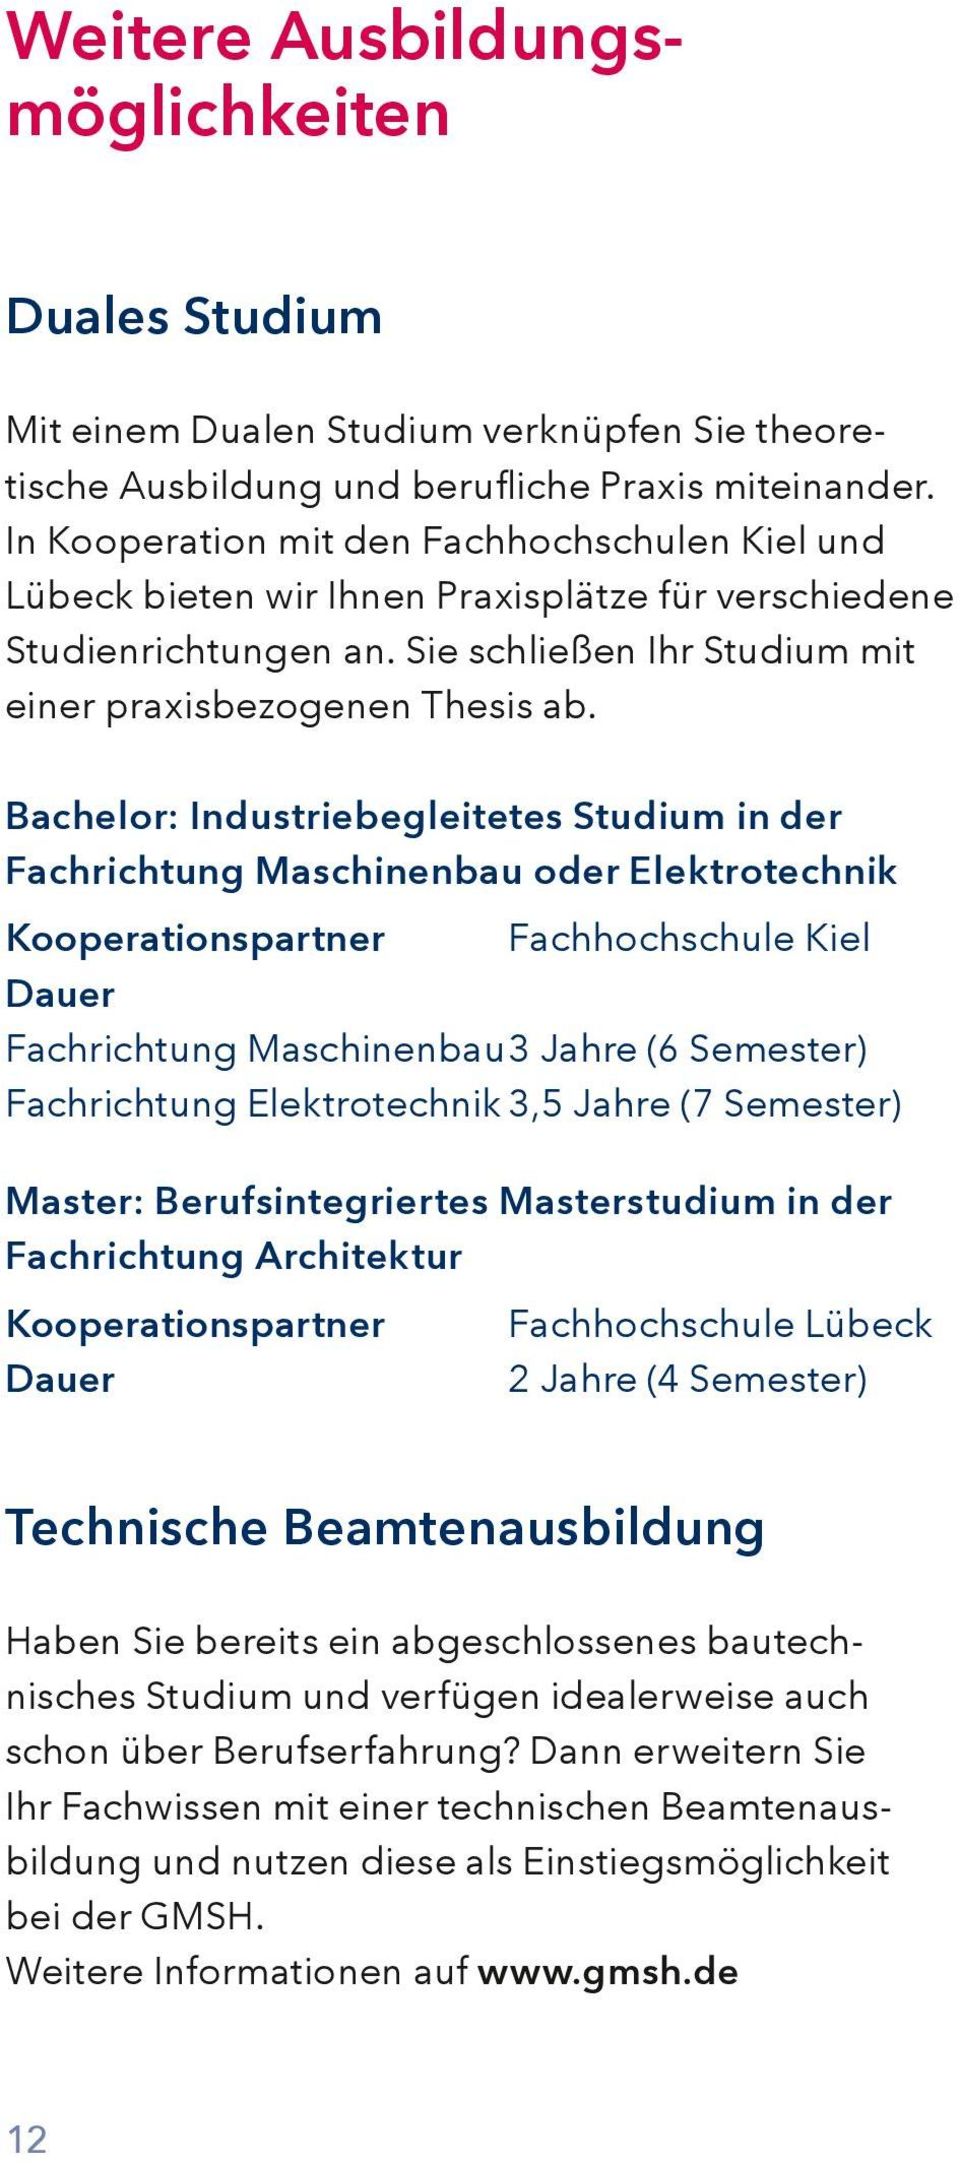 Bachelor: Industriebegleitetes Studium in der Fachrichtung Maschinenbau oder Elektrotechnik Kooperationspartner Fachhochschule Kiel Dauer Fachrichtung Maschinenbau 3 Jahre (6 Semester) Fachrichtung